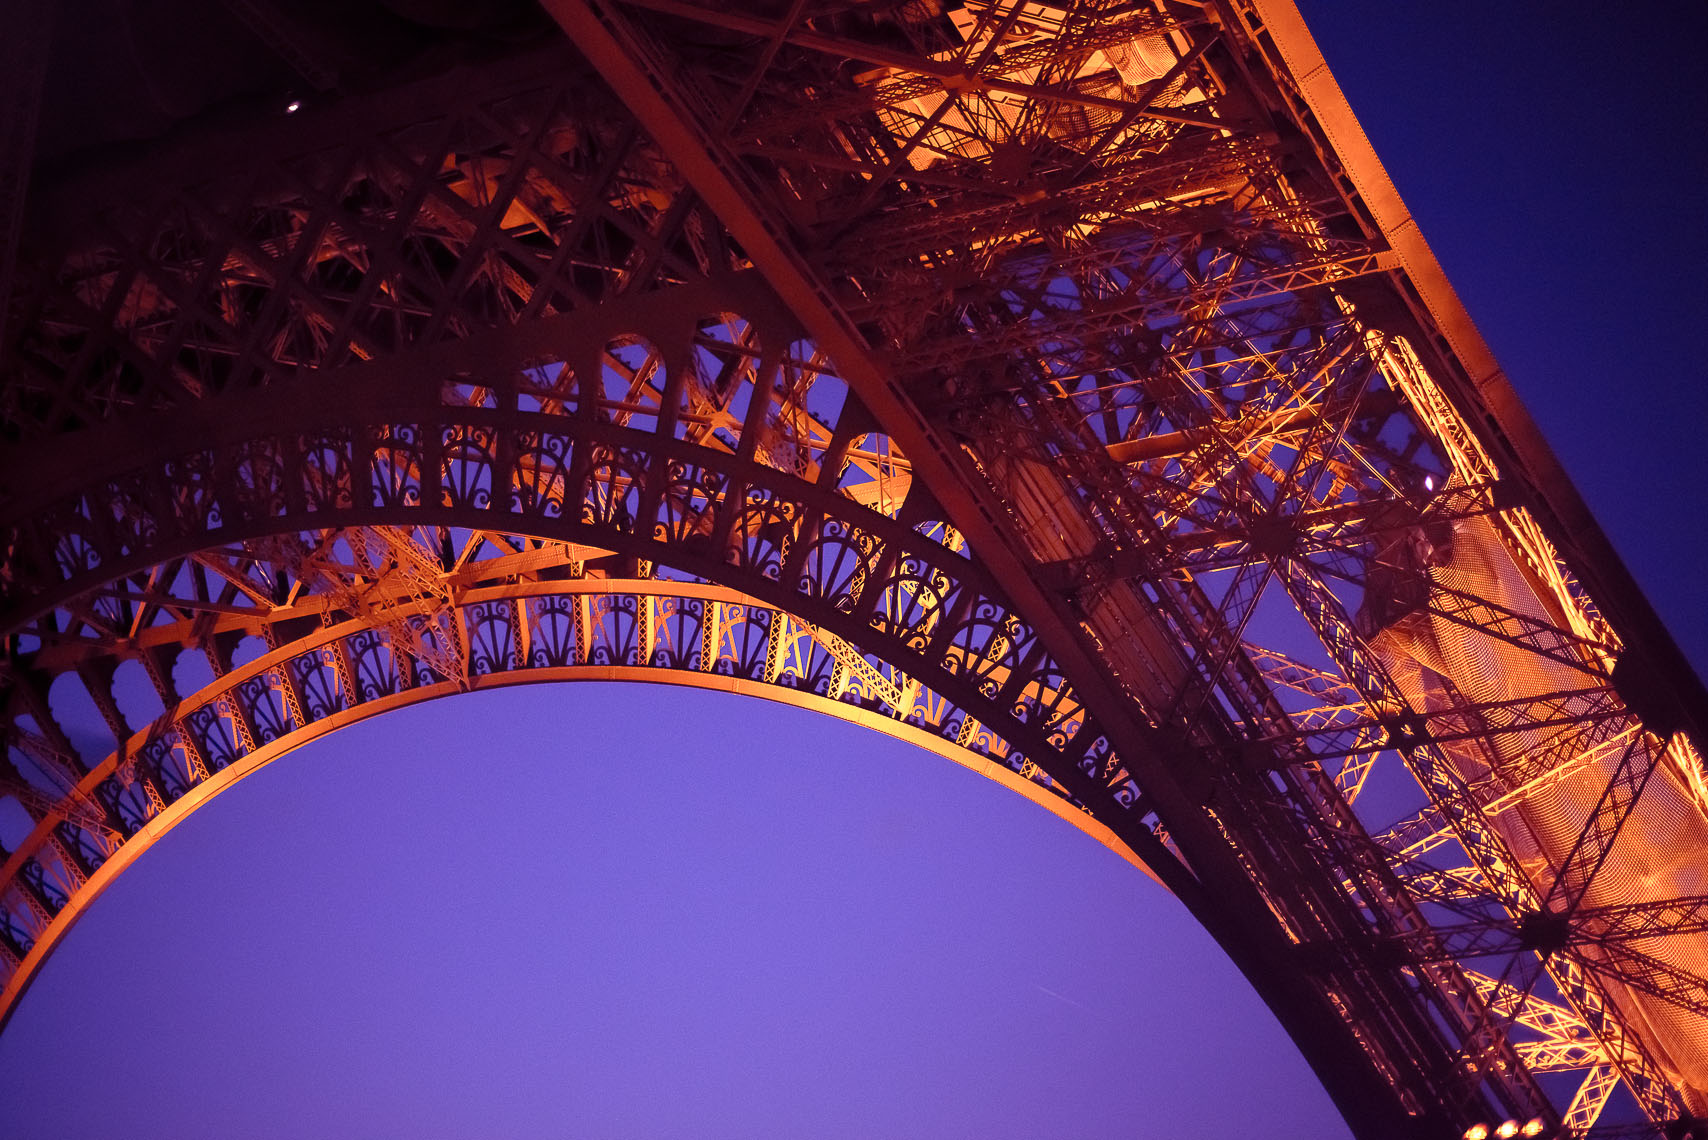 081_Paris by D800_La Tour Eiffel.jpg